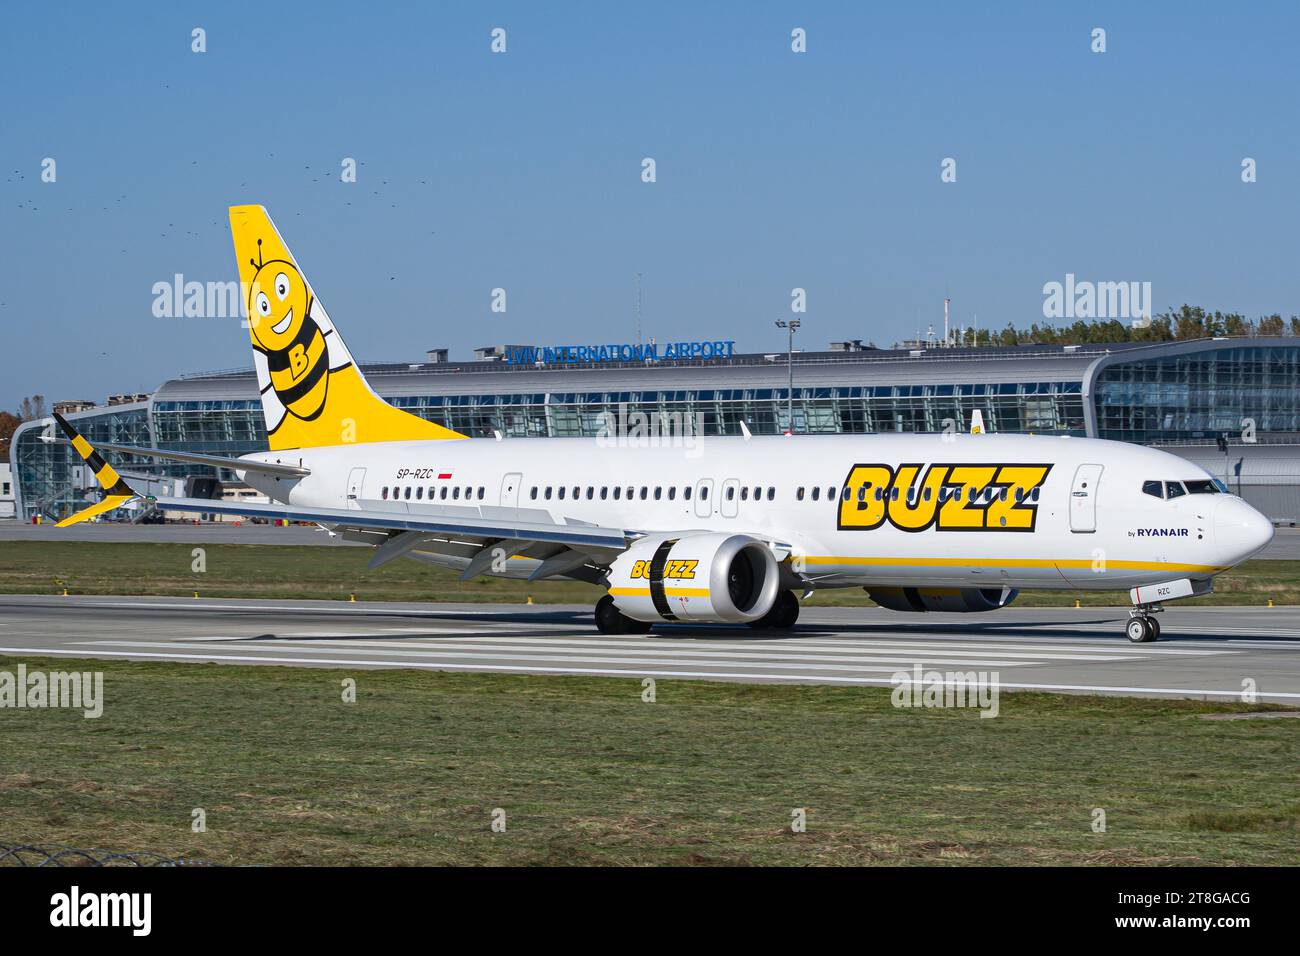 Buzz Airlines (von Ryanair betrieben) Boeing 737 MAX 8-200 verlangsamt sich auf der Landebahn nach der Landung auf dem Flughafen Lemberg. Hochwertige Fotos Stockfoto